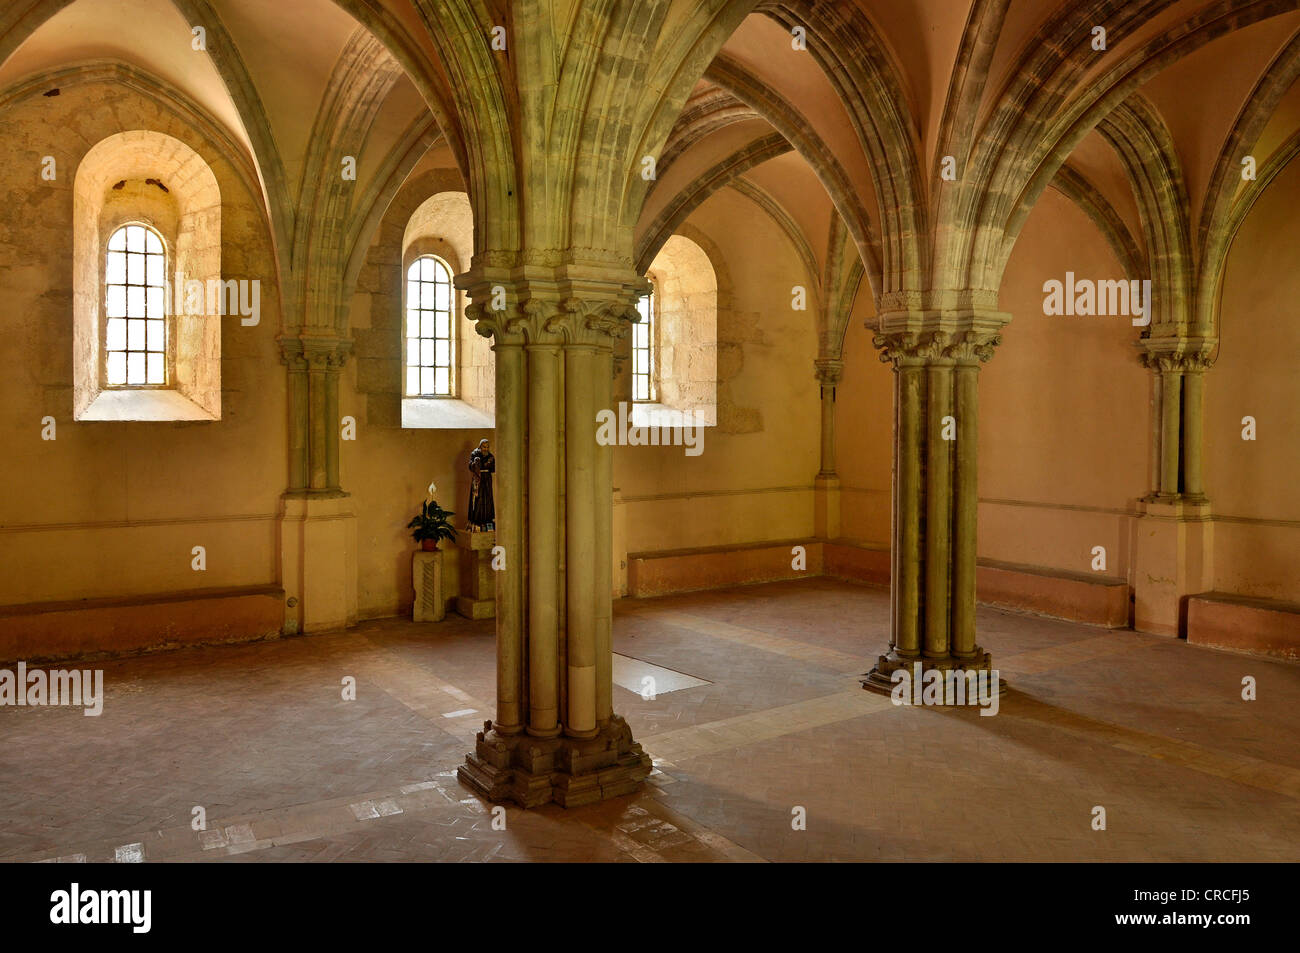 Vue de l'intérieur, salle de la capitale à la basilique gothique du monastère cistercien, l'abbaye de Fossanova près de Priverno, lazio, Italie Banque D'Images